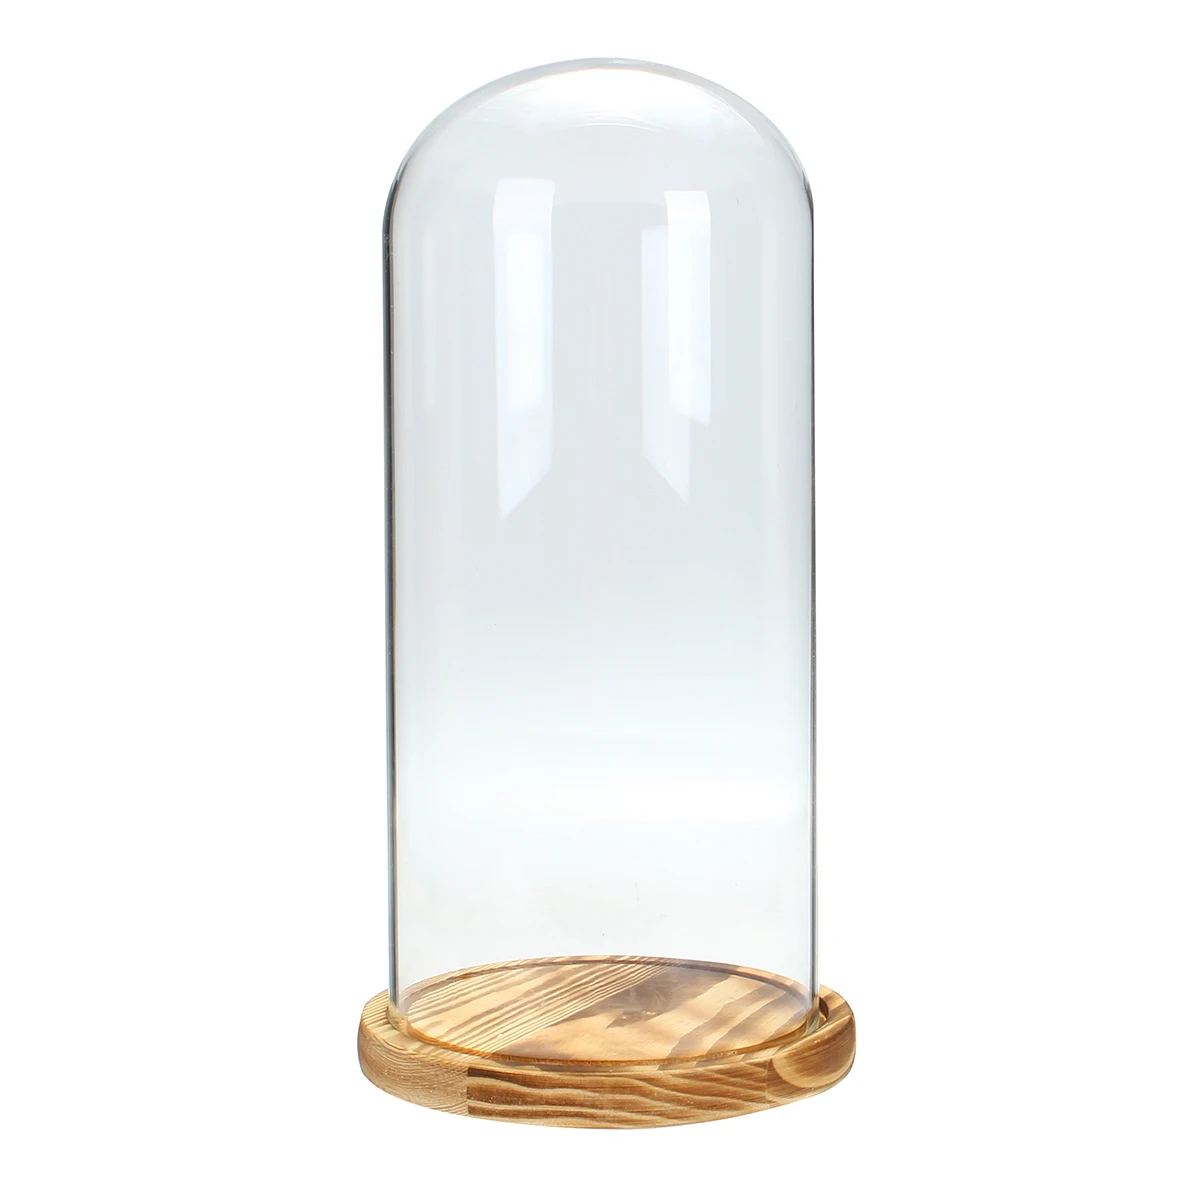 33X15 см DIY ваза декоративная стеклянная купольная деревянная основа Cloche Bell Jar Дисплей Стенд новая форма стеклянная банка декоративные поделки для рождения